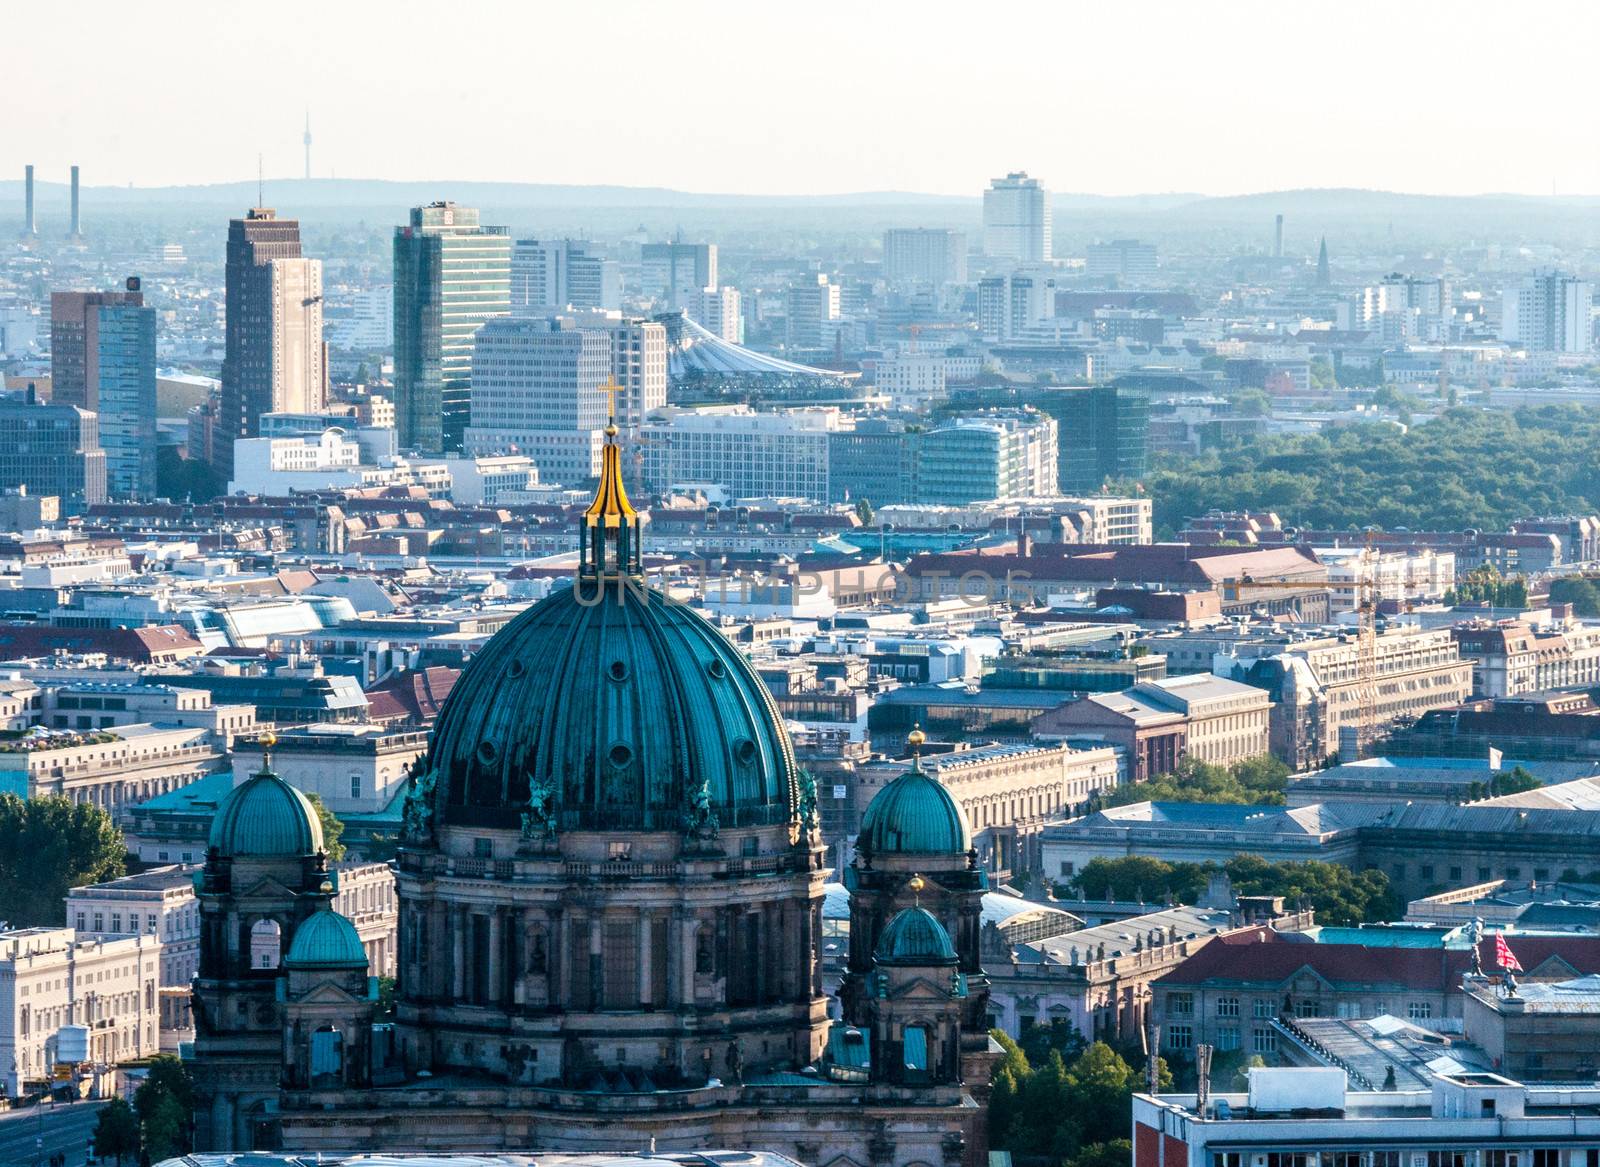 Berlin from above by Jule_Berlin